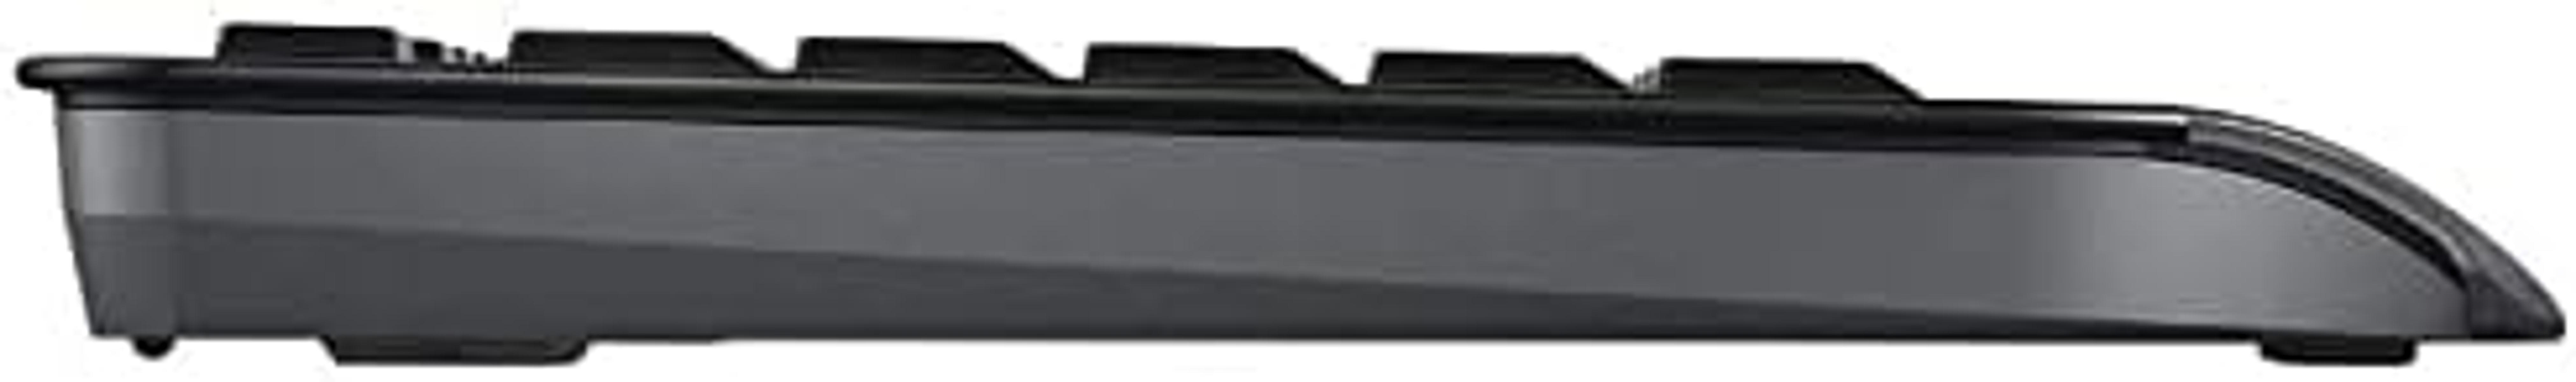 CHERRY W125866313, Schwarz Tastatur Maus Set